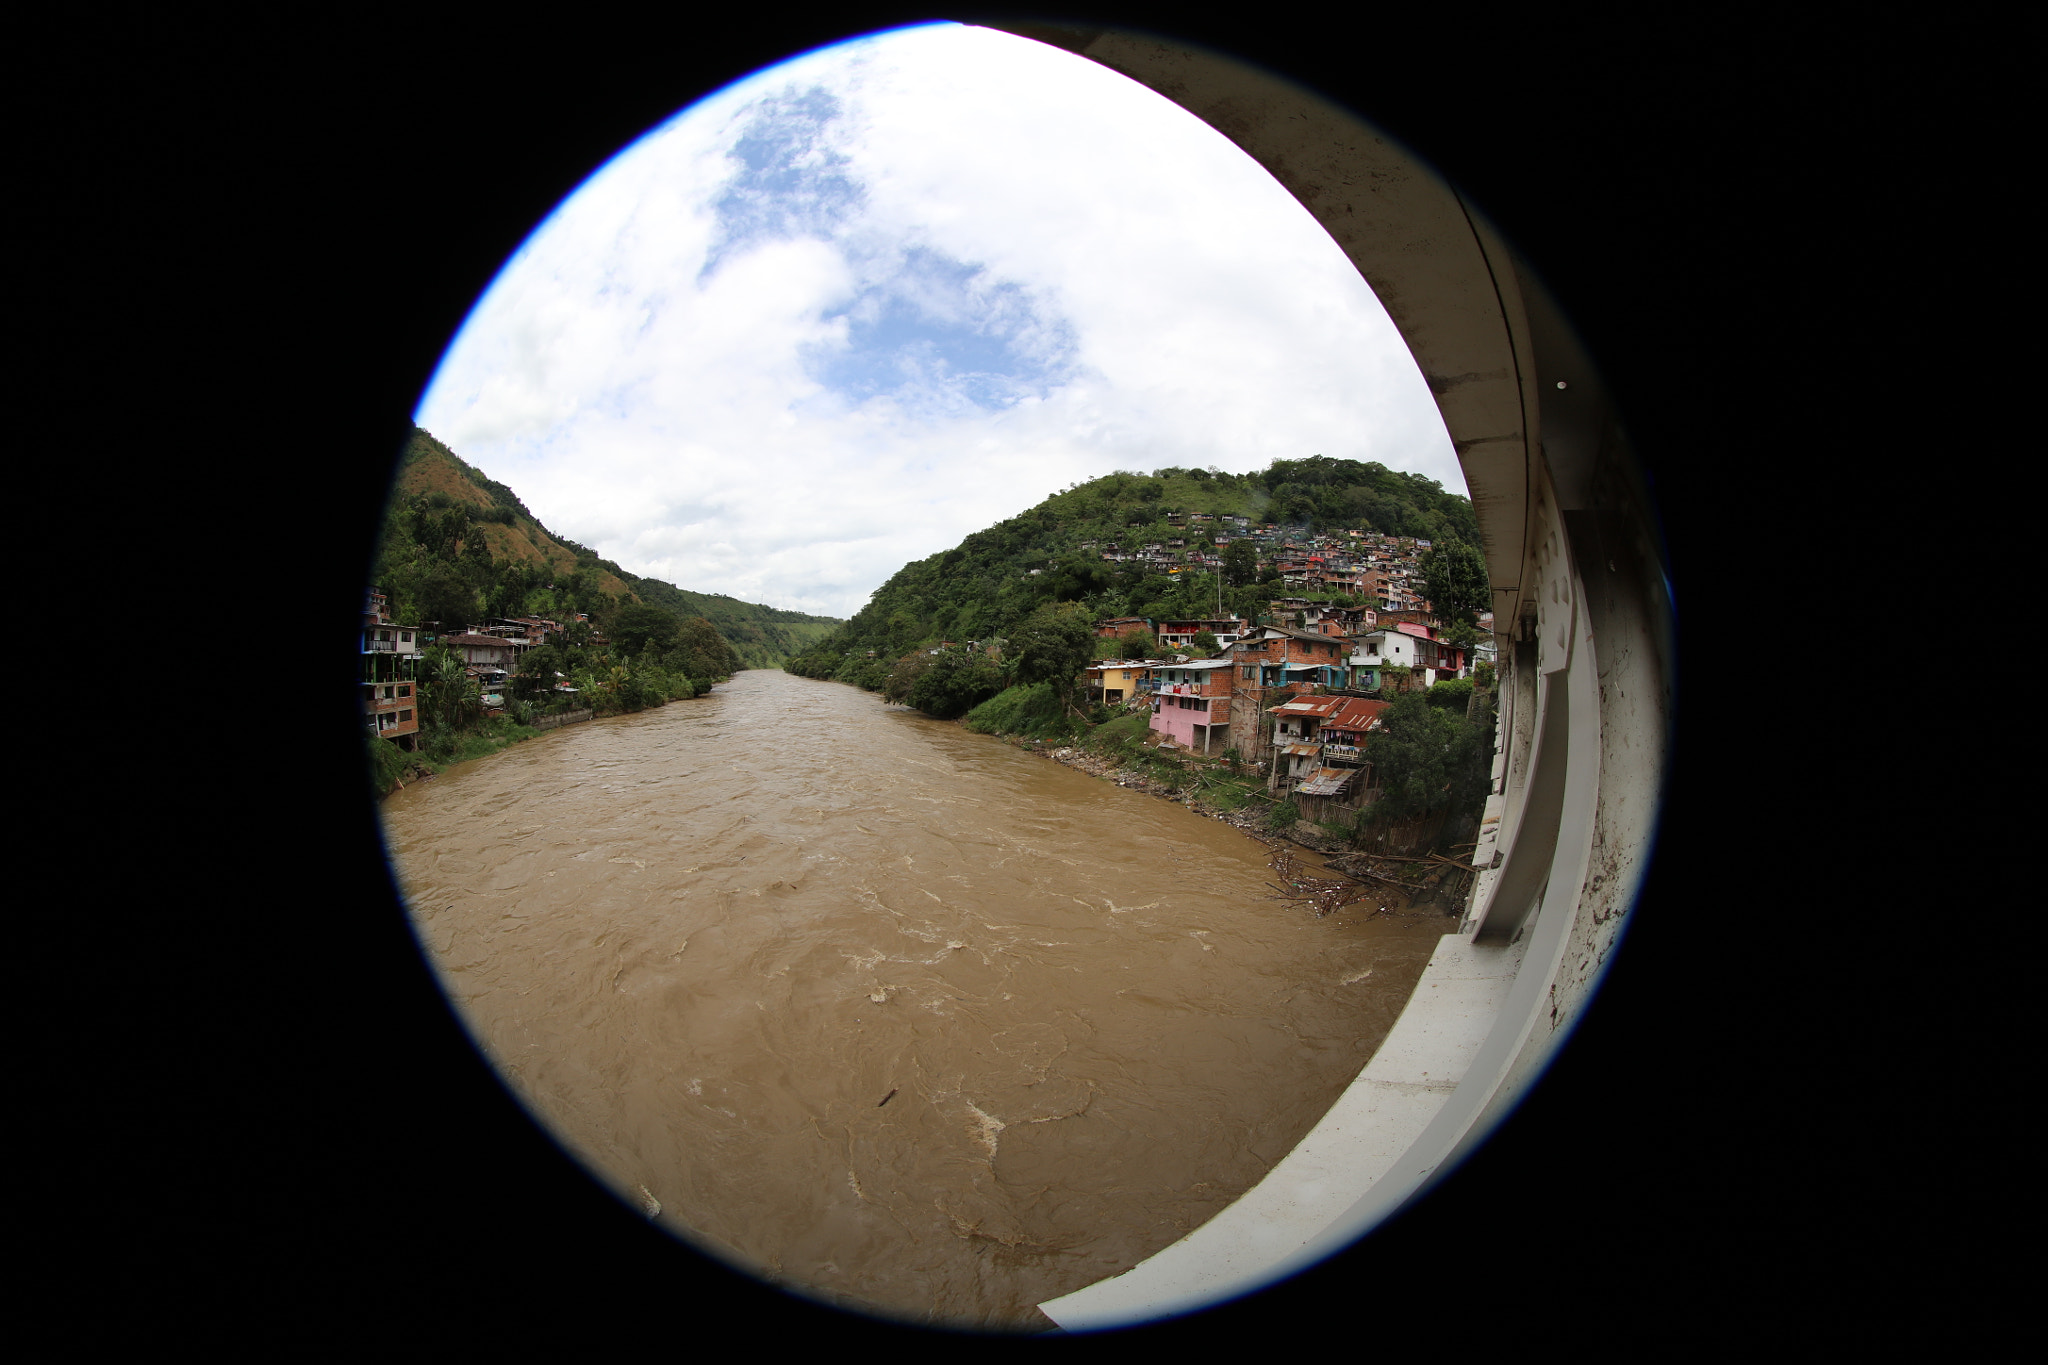 Canon EOS 5DS R + Canon EF 8-15mm F4L Fisheye USM sample photo. Río cauca, corre entre la cordillera central y oriental en colombia, a la altura de arauca caldas. photography